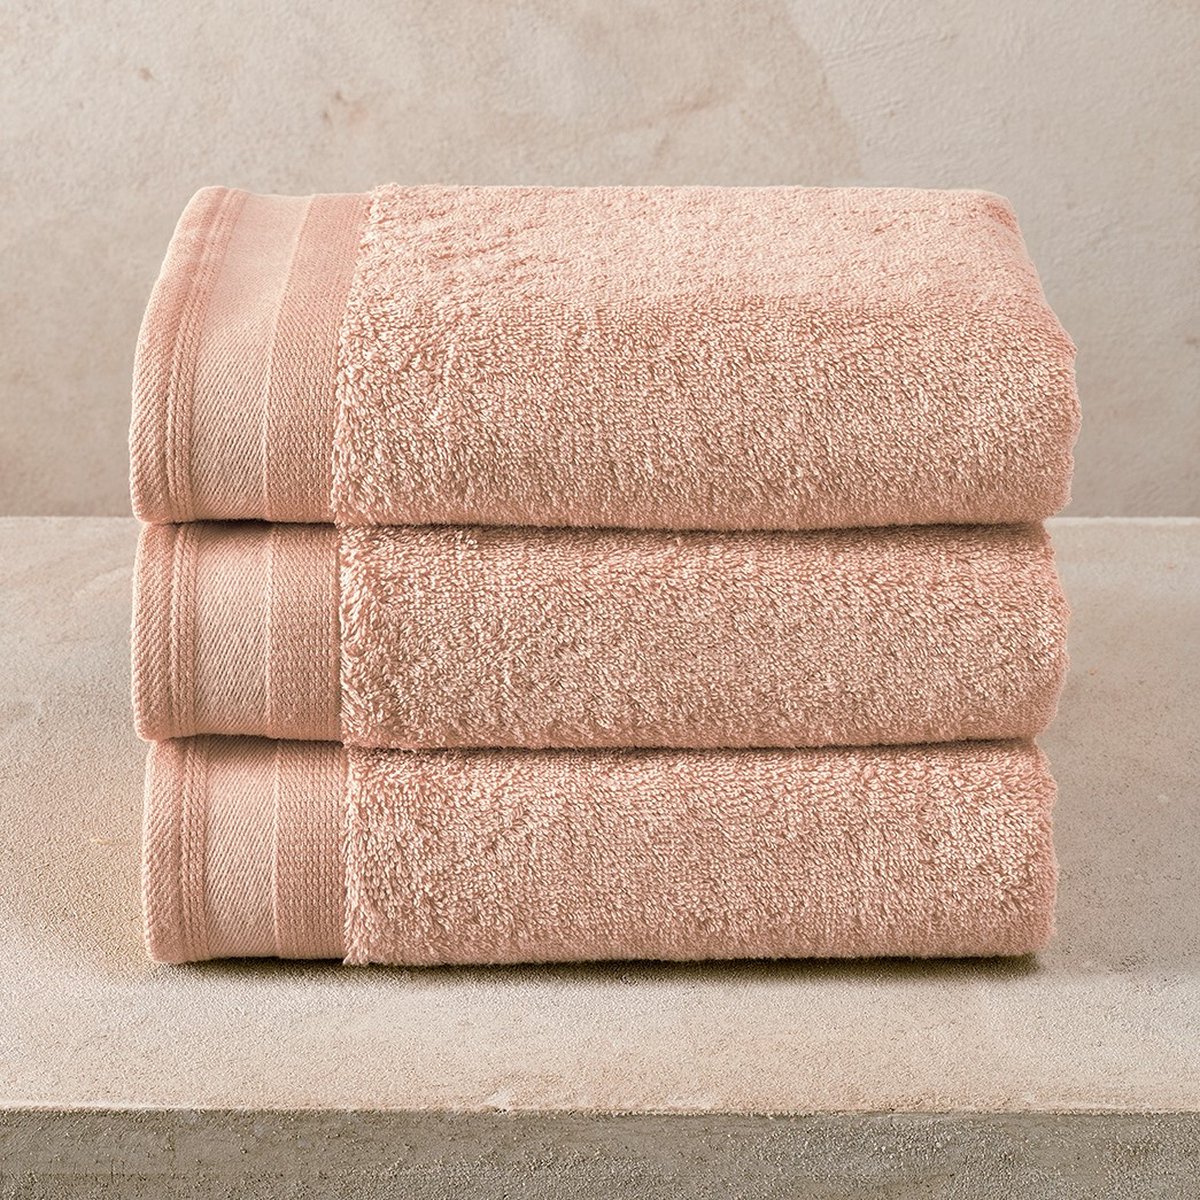 De Witte Lietaer excellence handdoek 50/100 kleur nude roze